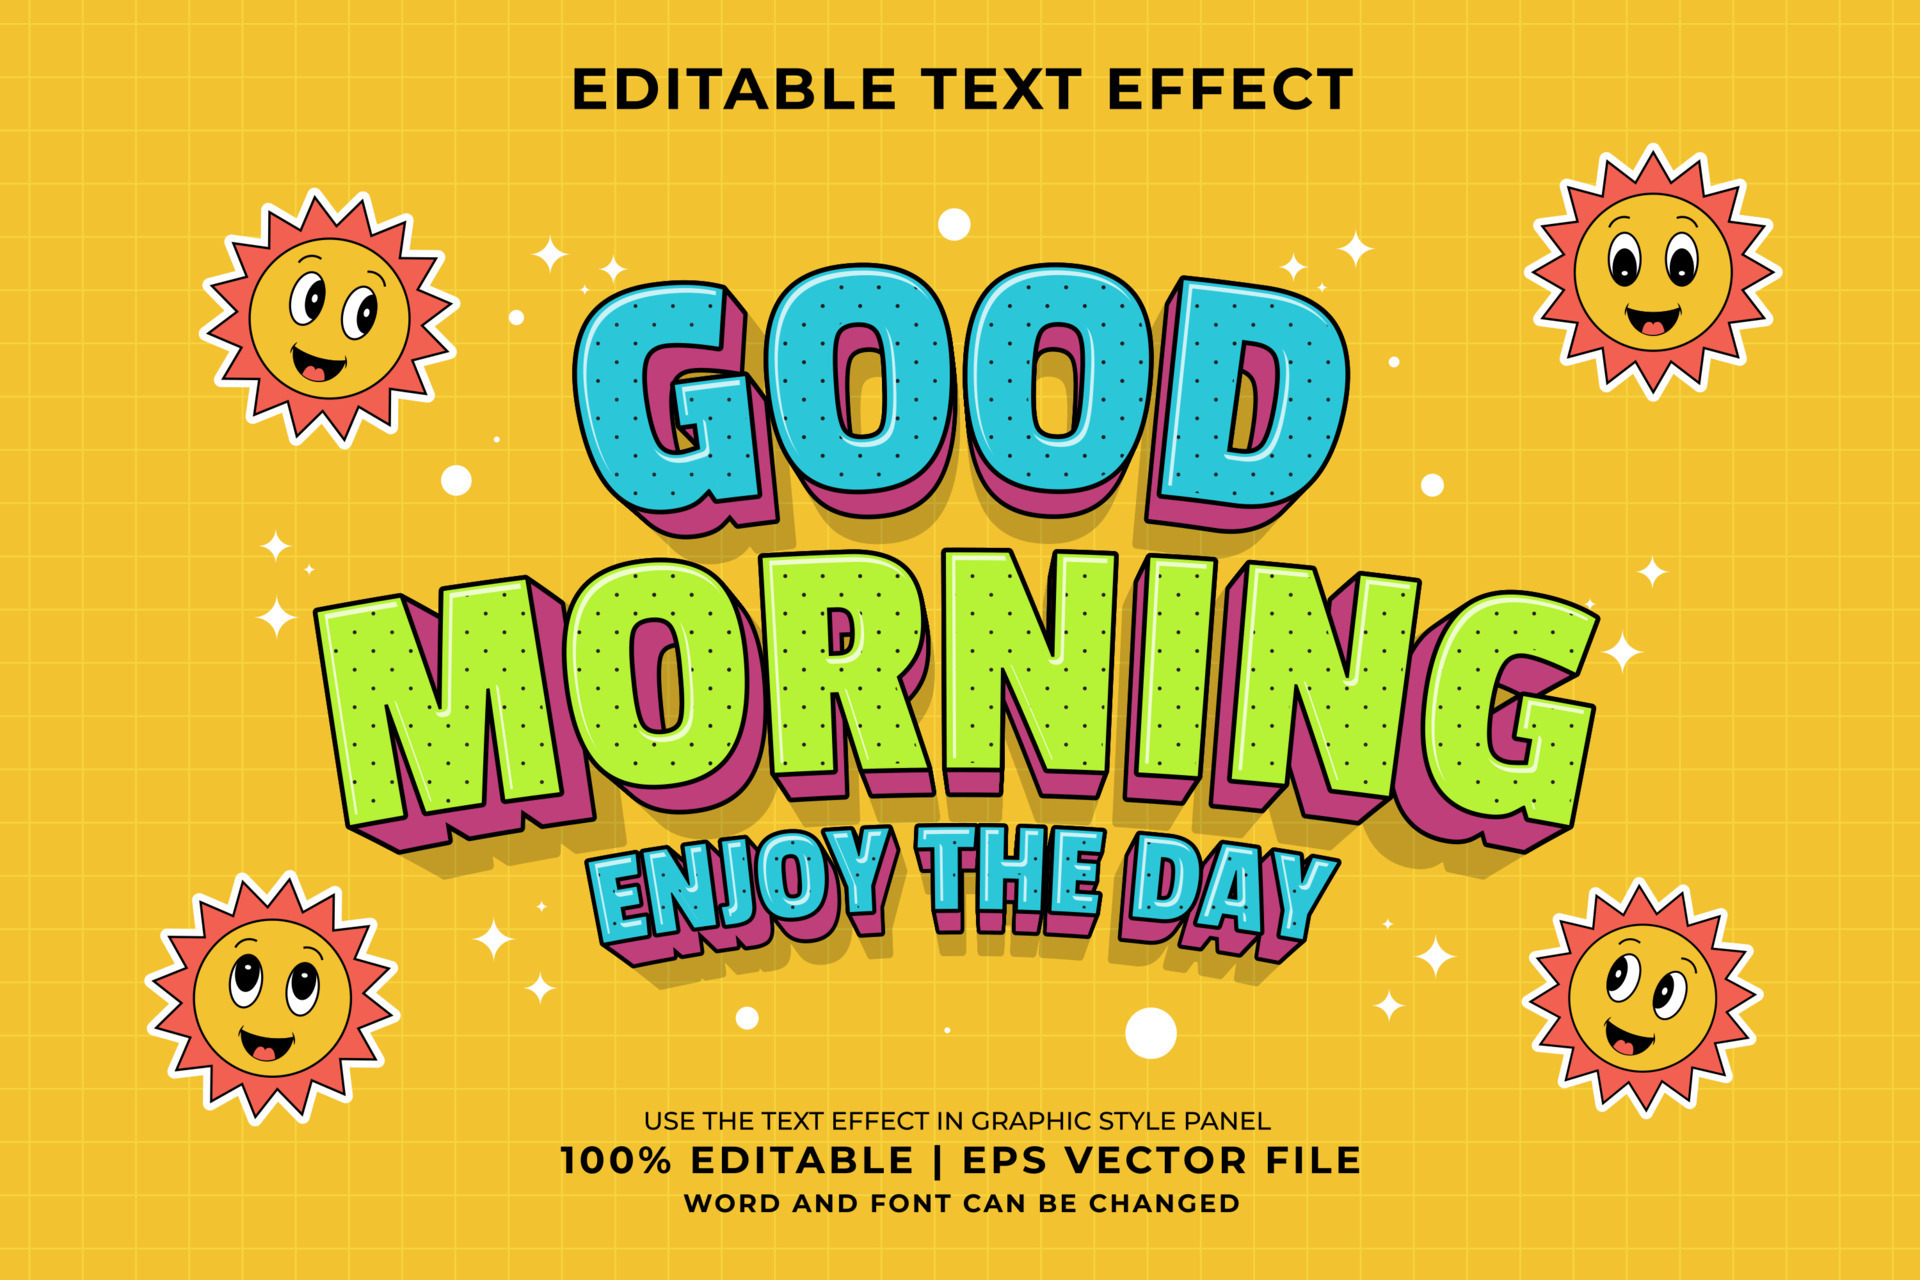 efeito de texto editável - bom dia 3d modelo tradicional de desenho animado  vetor premium 18867911 Vetor no Vecteezy